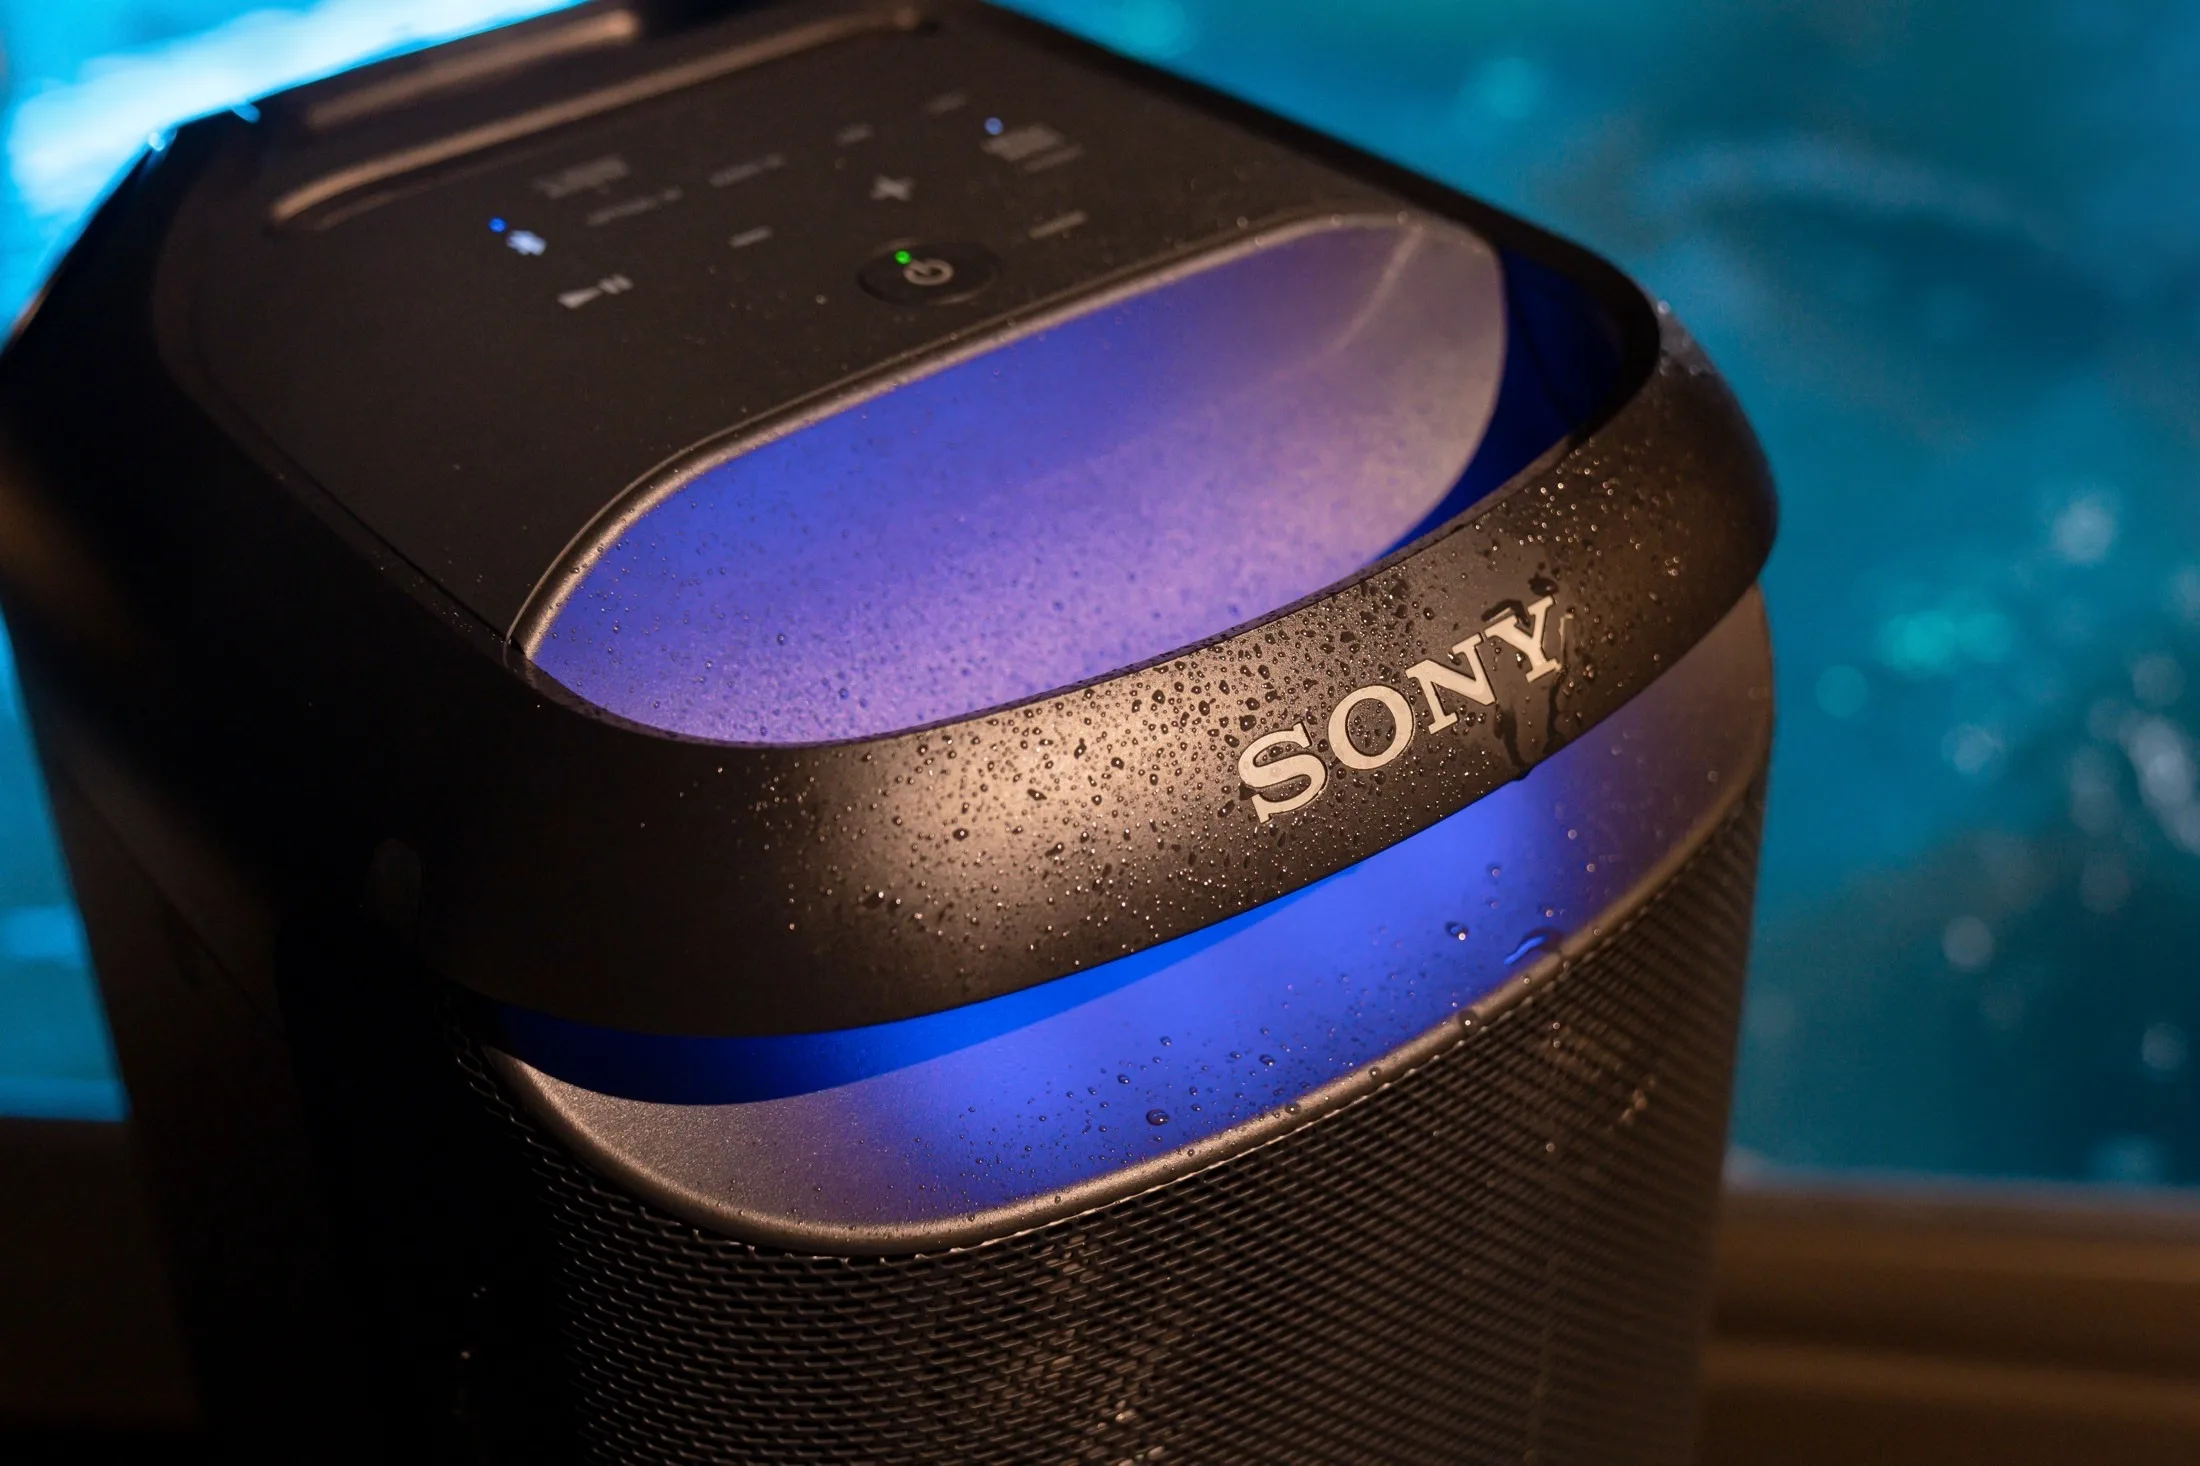 Test et avis de l'enceinte Sony SRS-XB100 : est-elle le bon choix ?